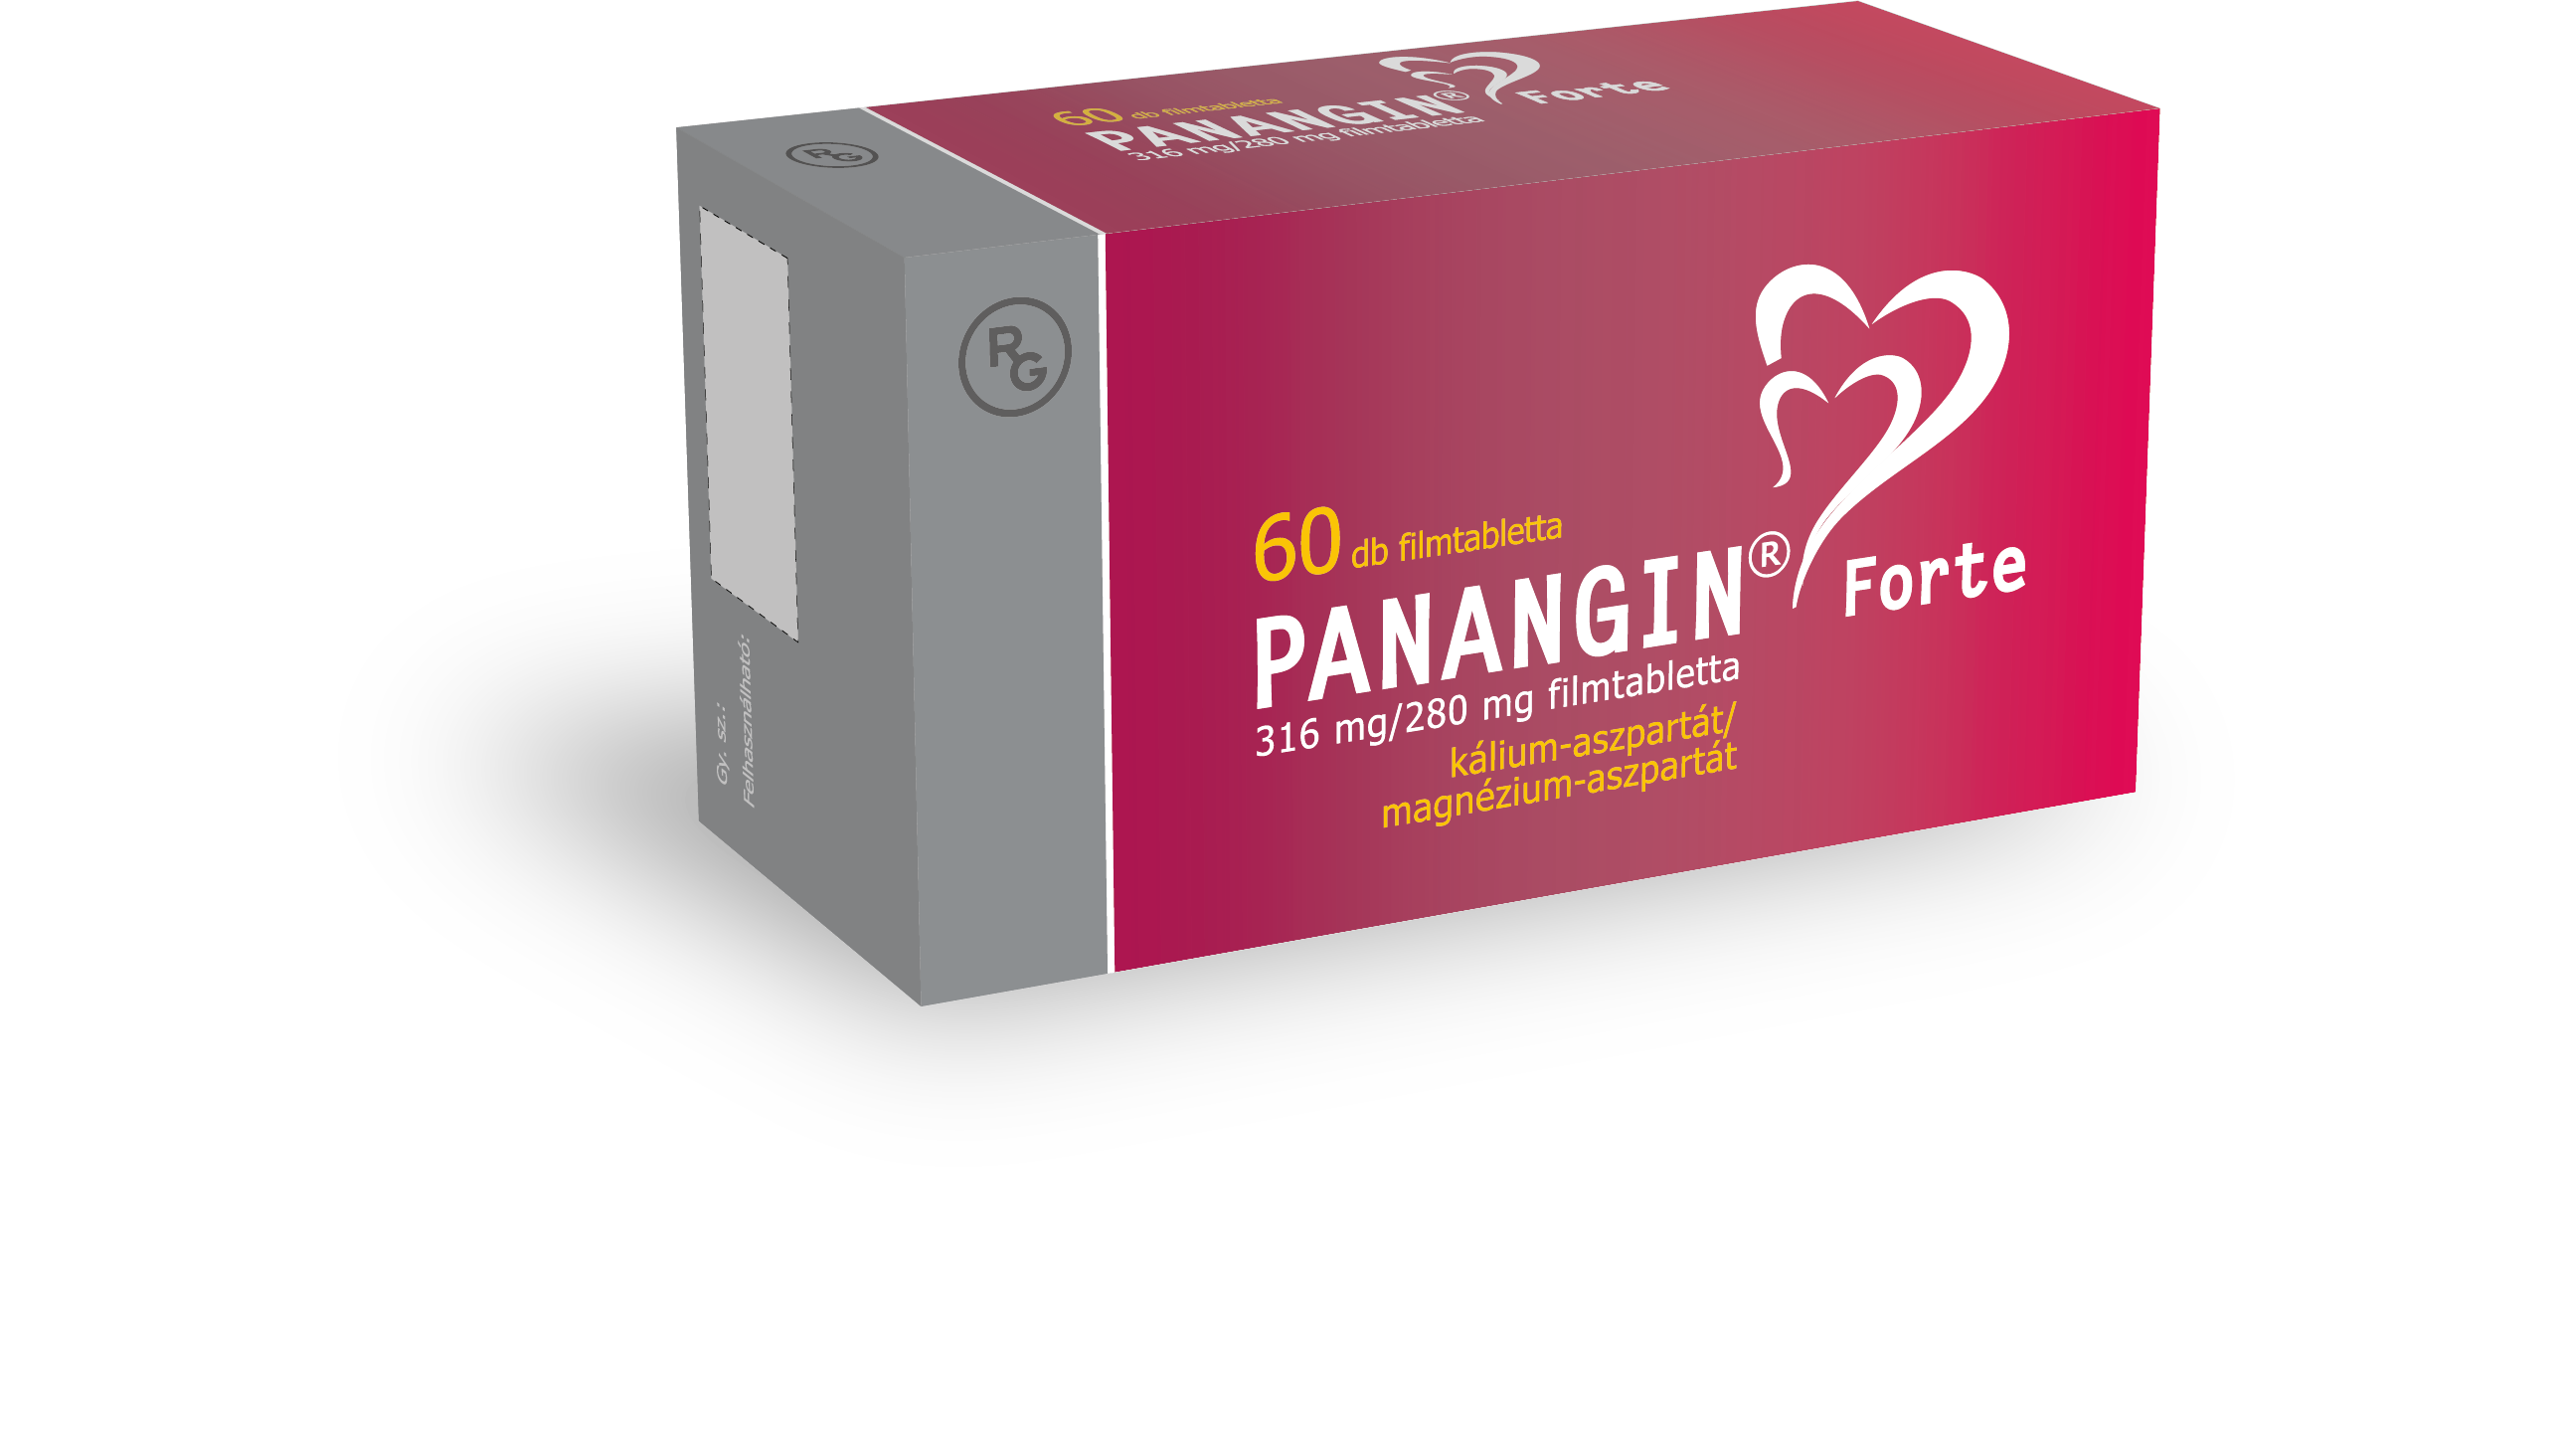 Panangin Forte 316 mg / 280 mg filmtabletta 